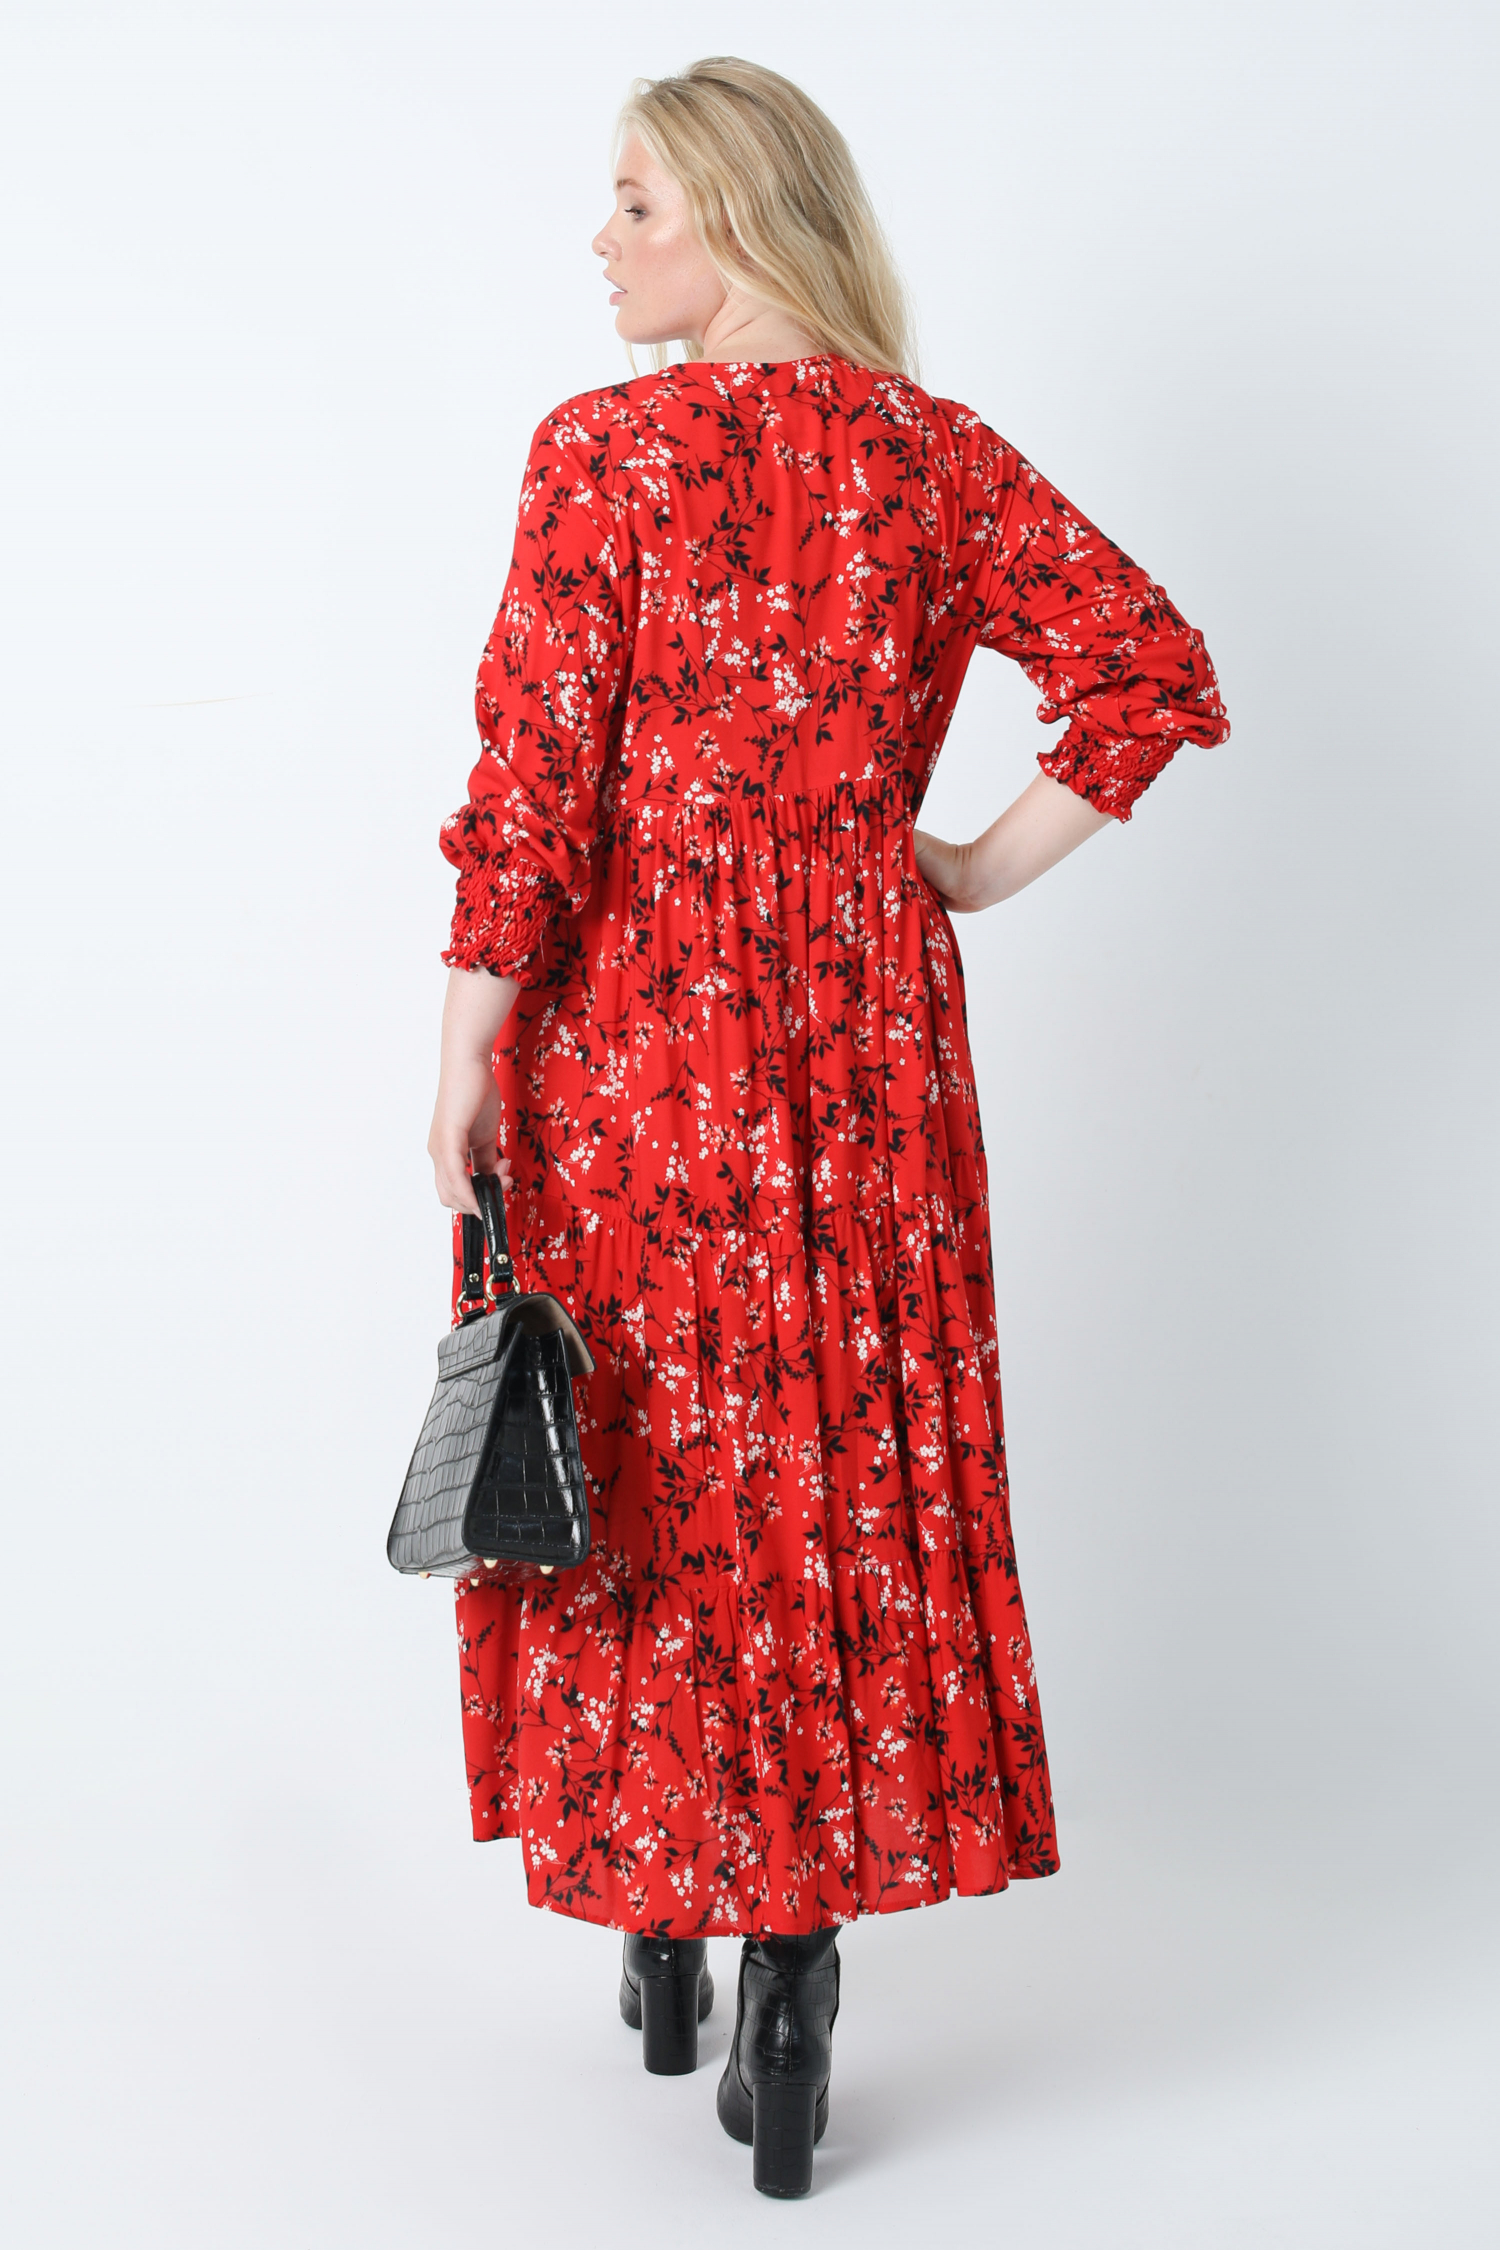 Long bohemian style dress in printed viscose oeko-tex fabrics